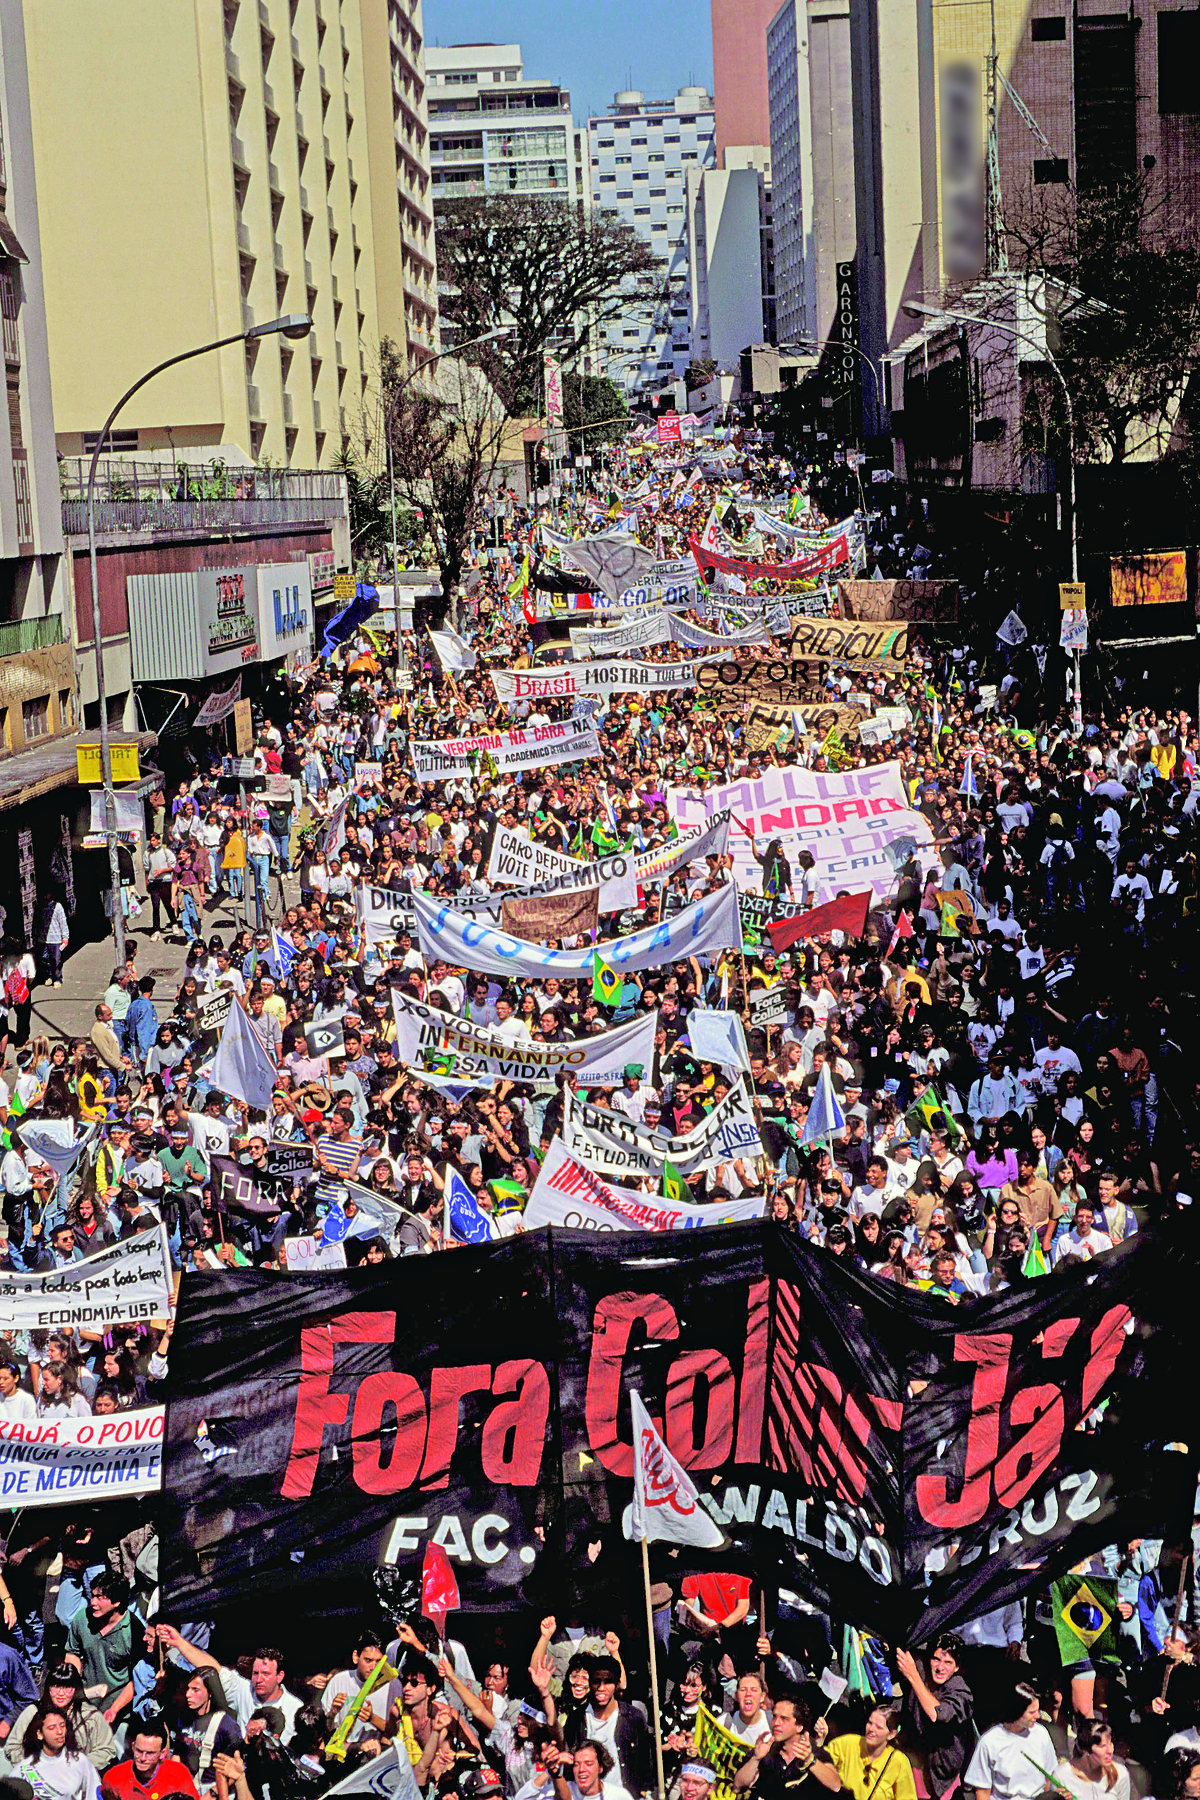 Fotografia. Multidão na rua em uma manifestação. Carregam muitos cartazes e faixas. À frente, a faixa tem os dizeres: FORA COLLOR JÁ!